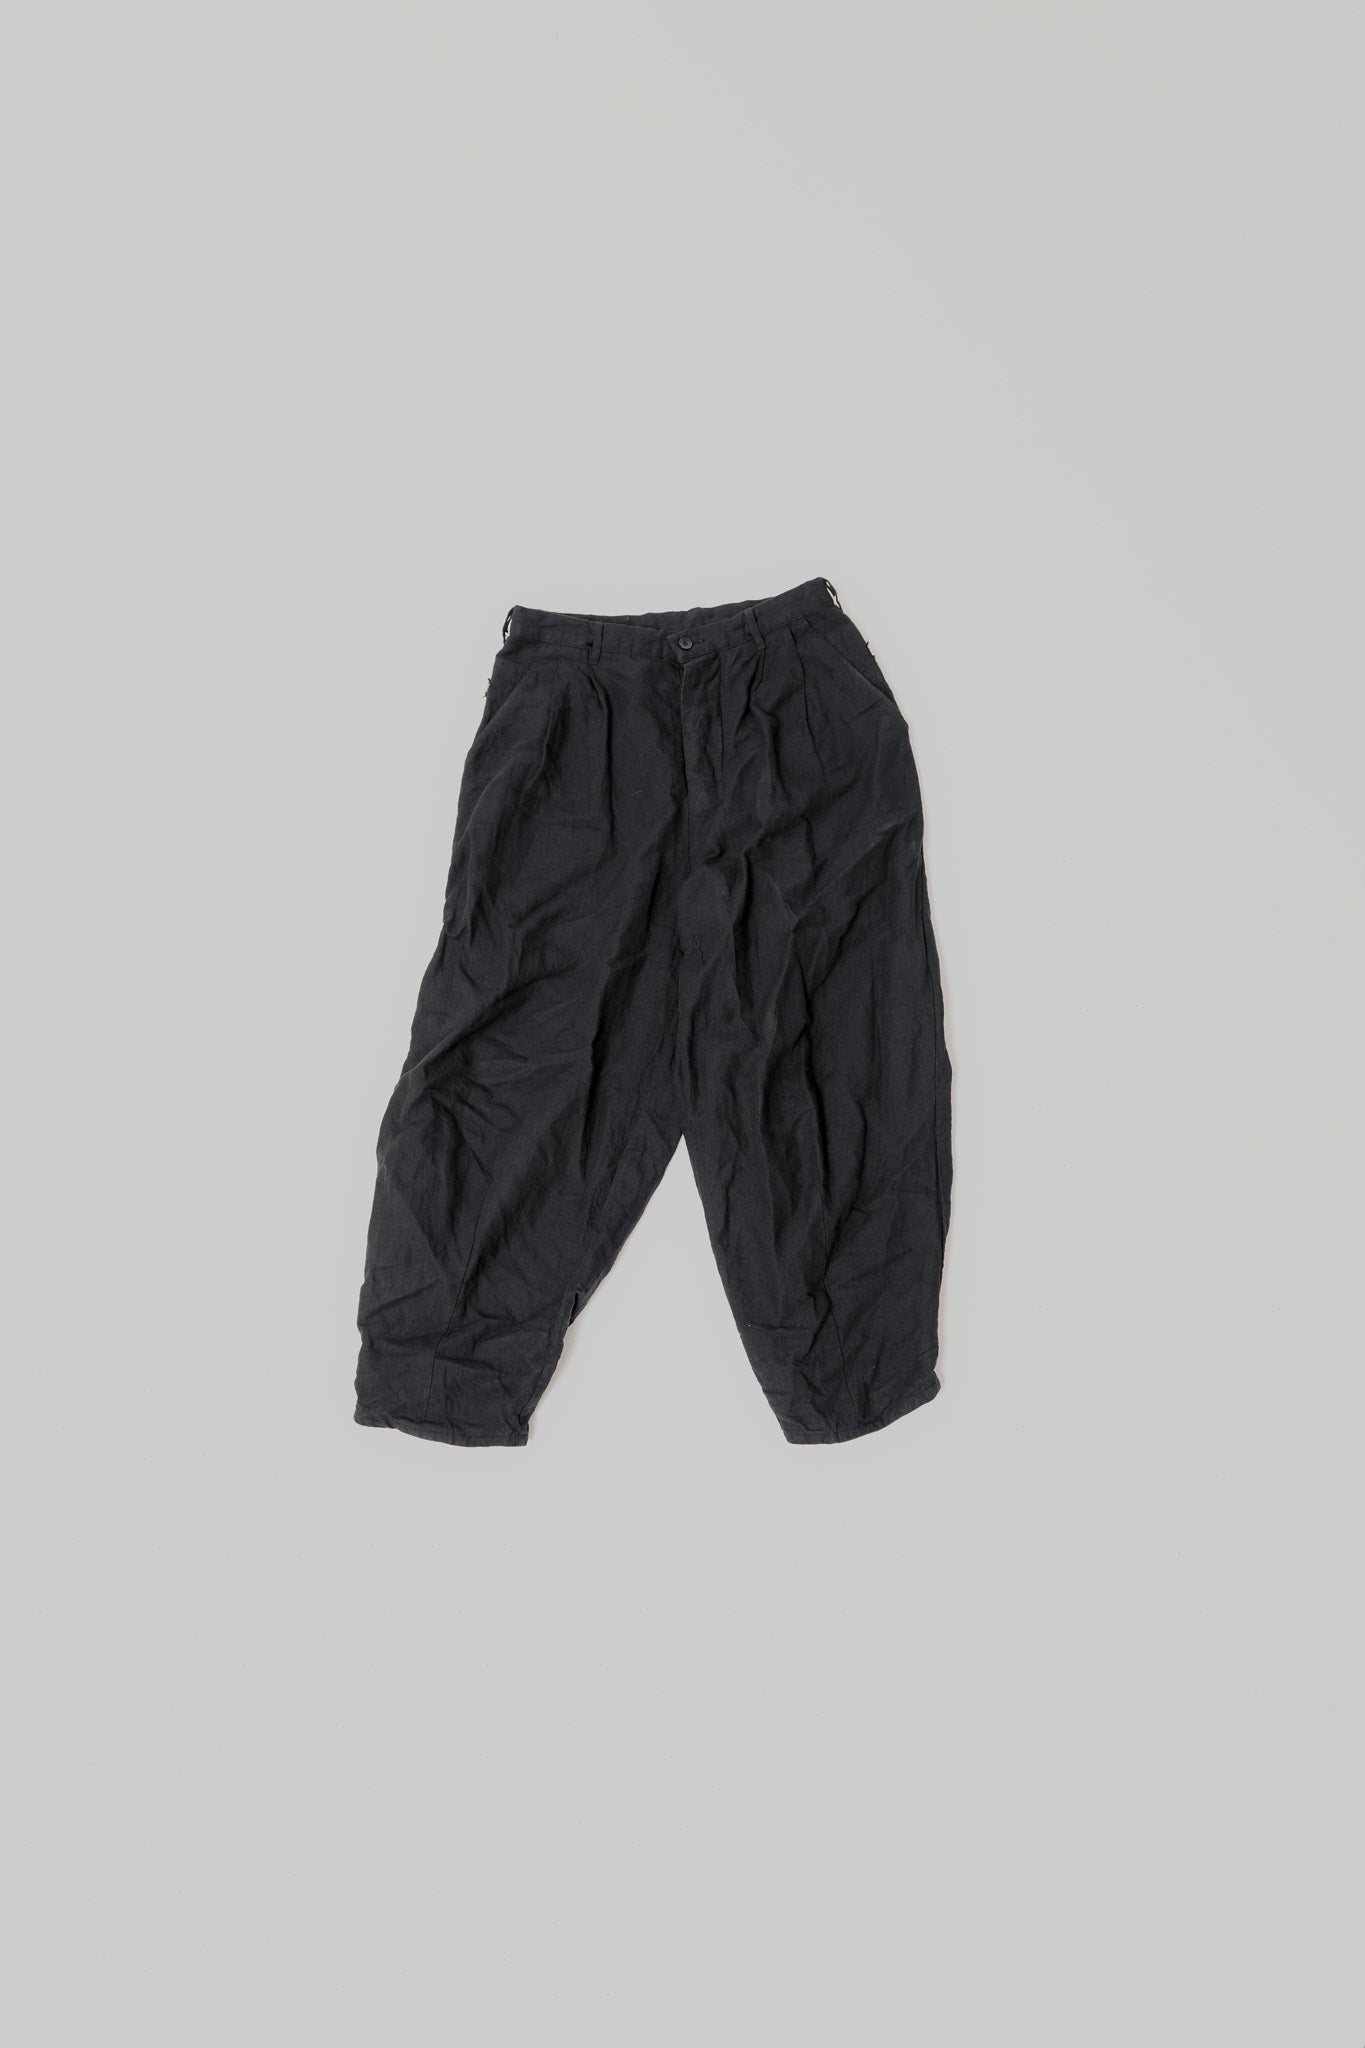 041 - Basic Balloon Pants in Linen